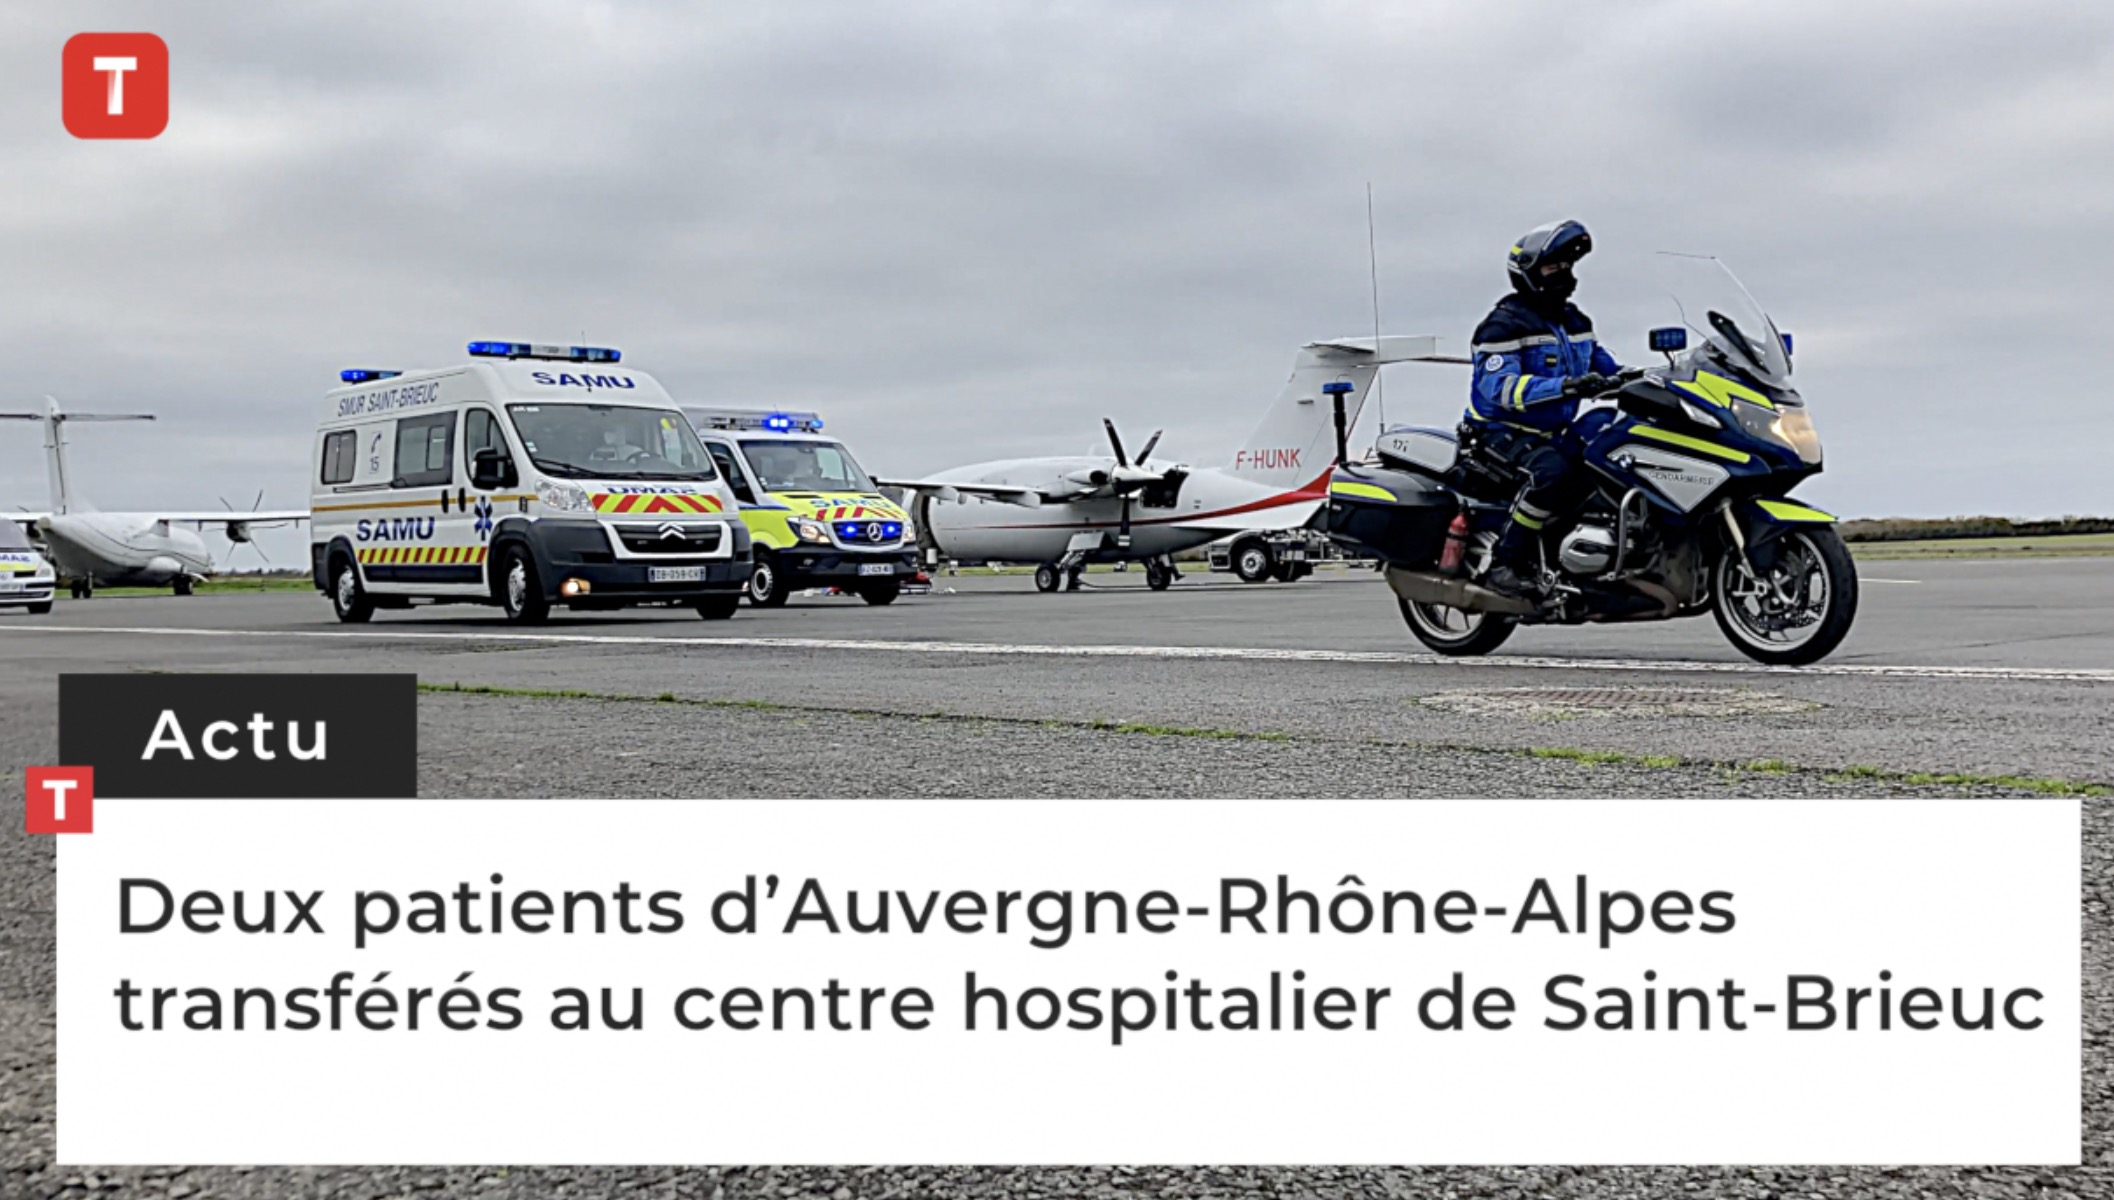 Saint-Brieuc. Deux patients d’Auvergne-Rhône-Alpes transférés au centre hospitalier  (Le Télégramme)